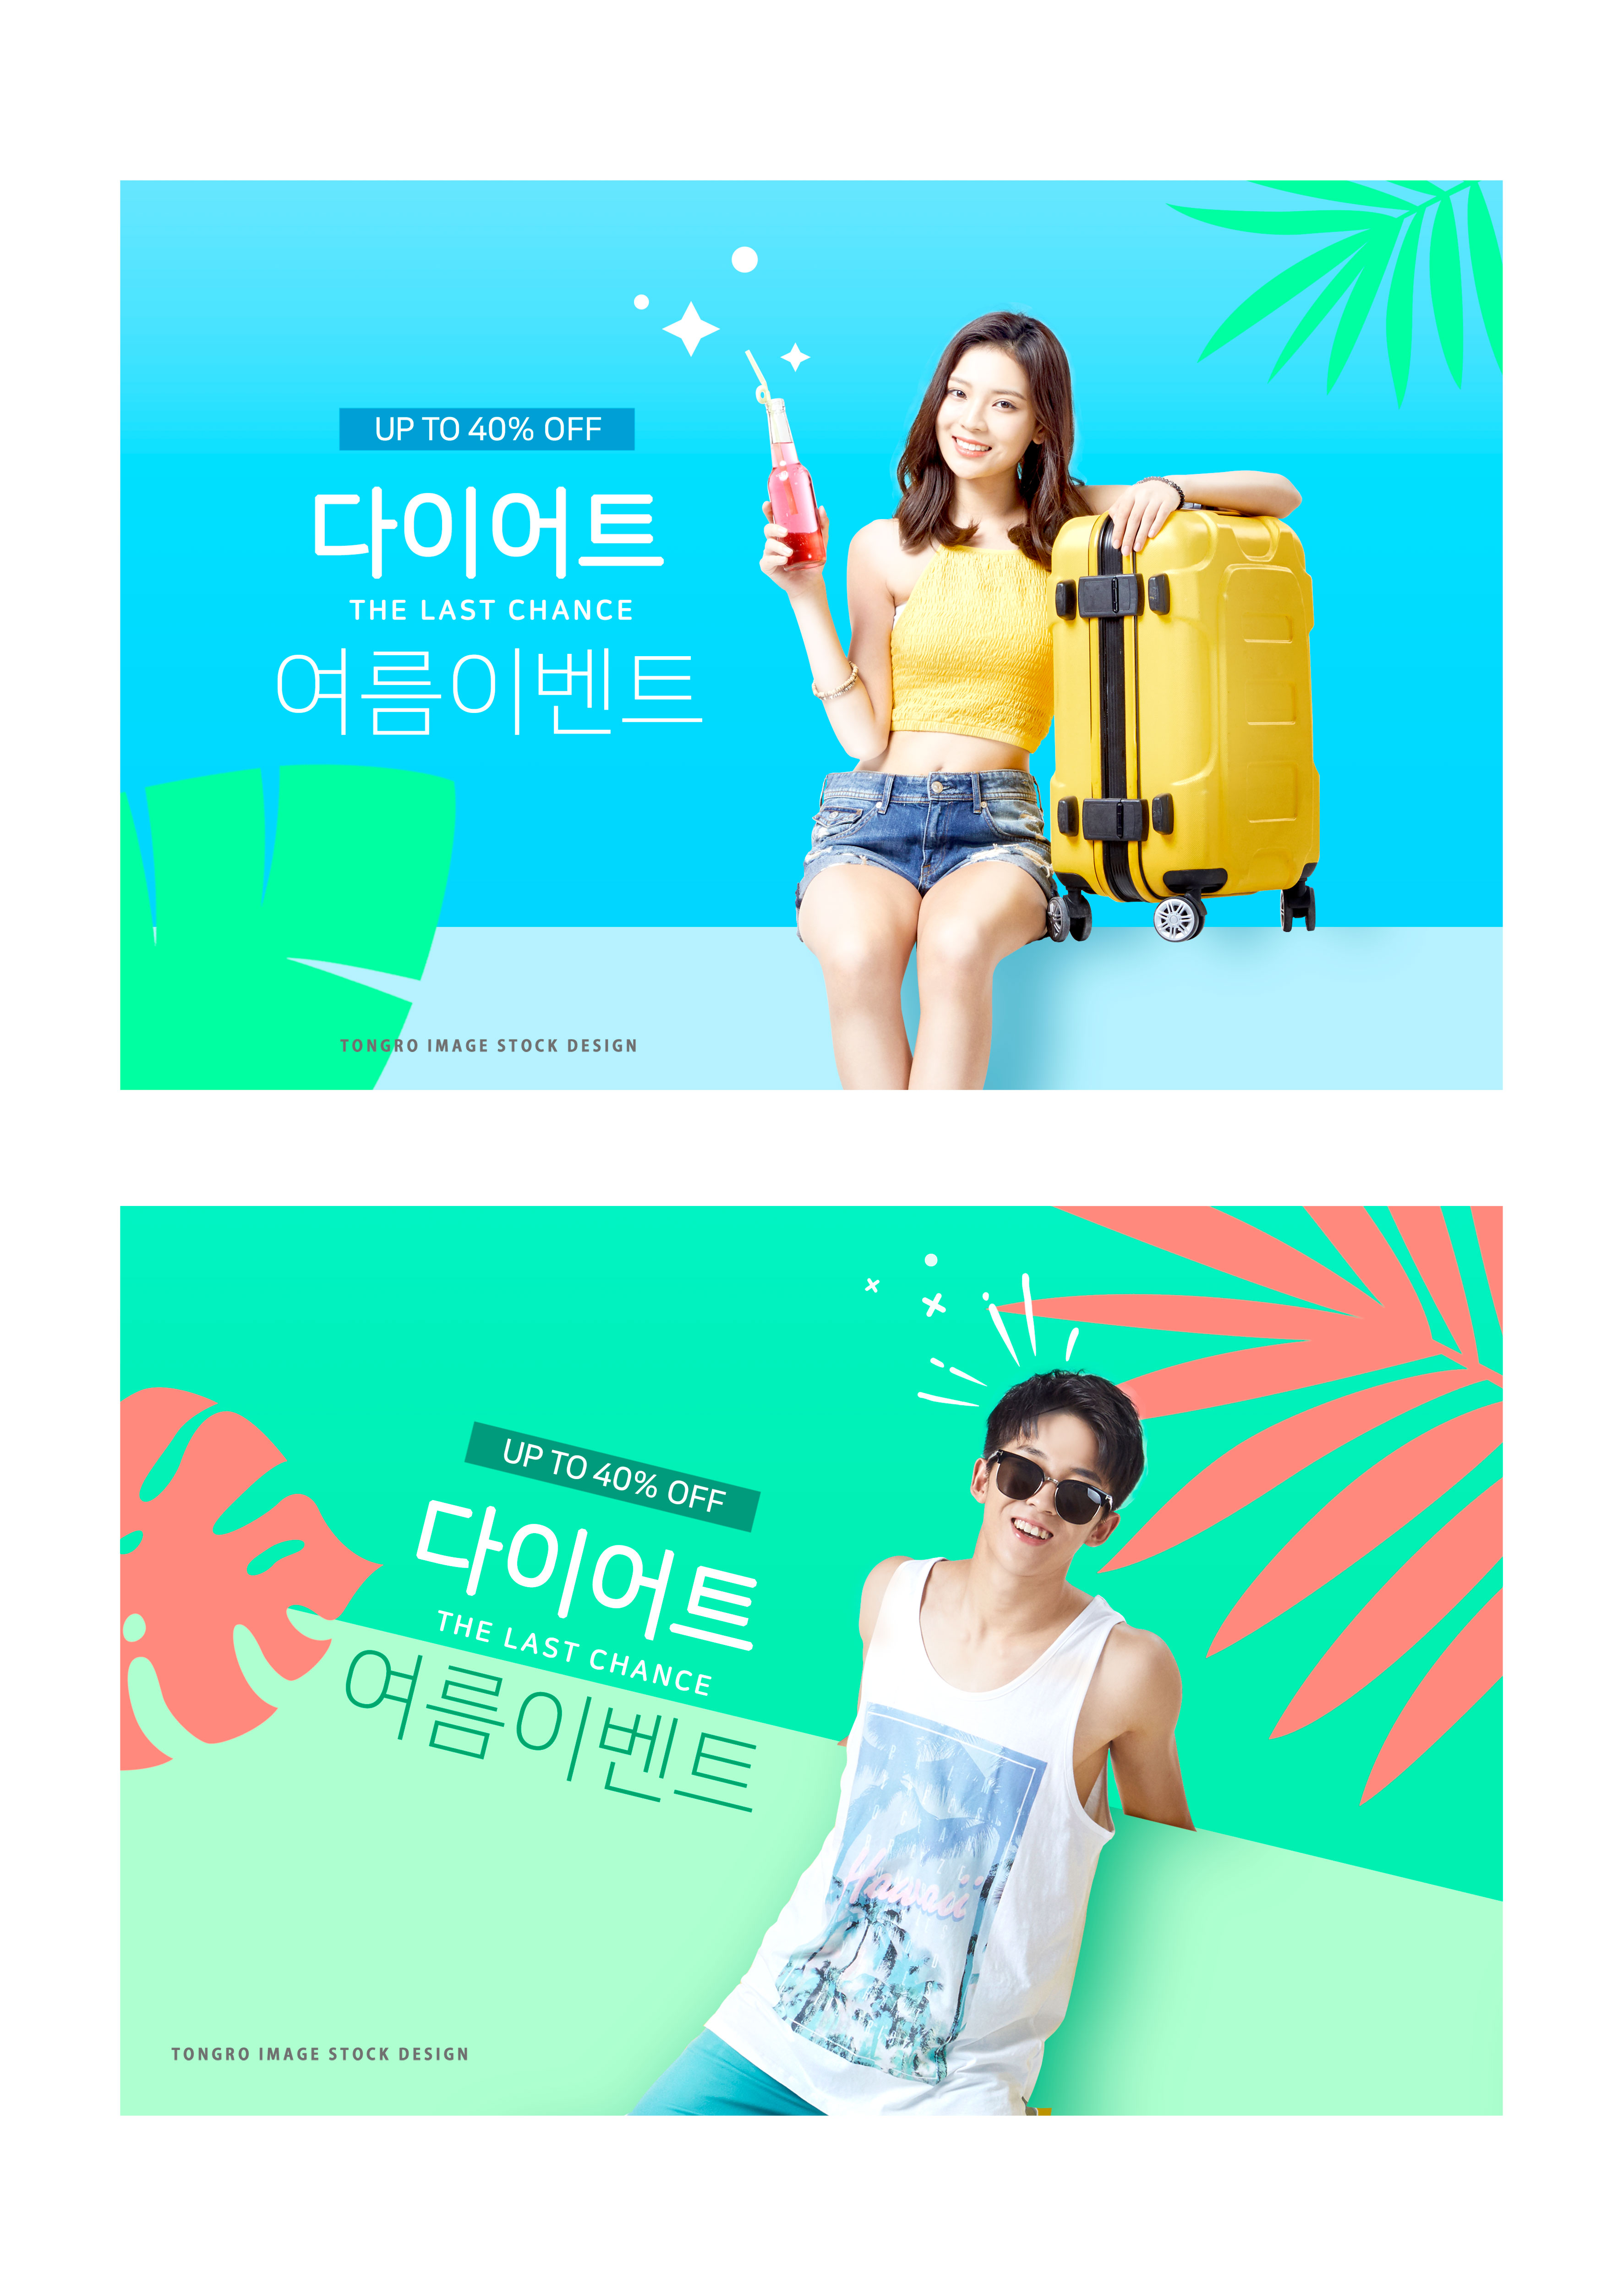 夏季暑假旅行促销活动广告海报/Banner设计模板插图